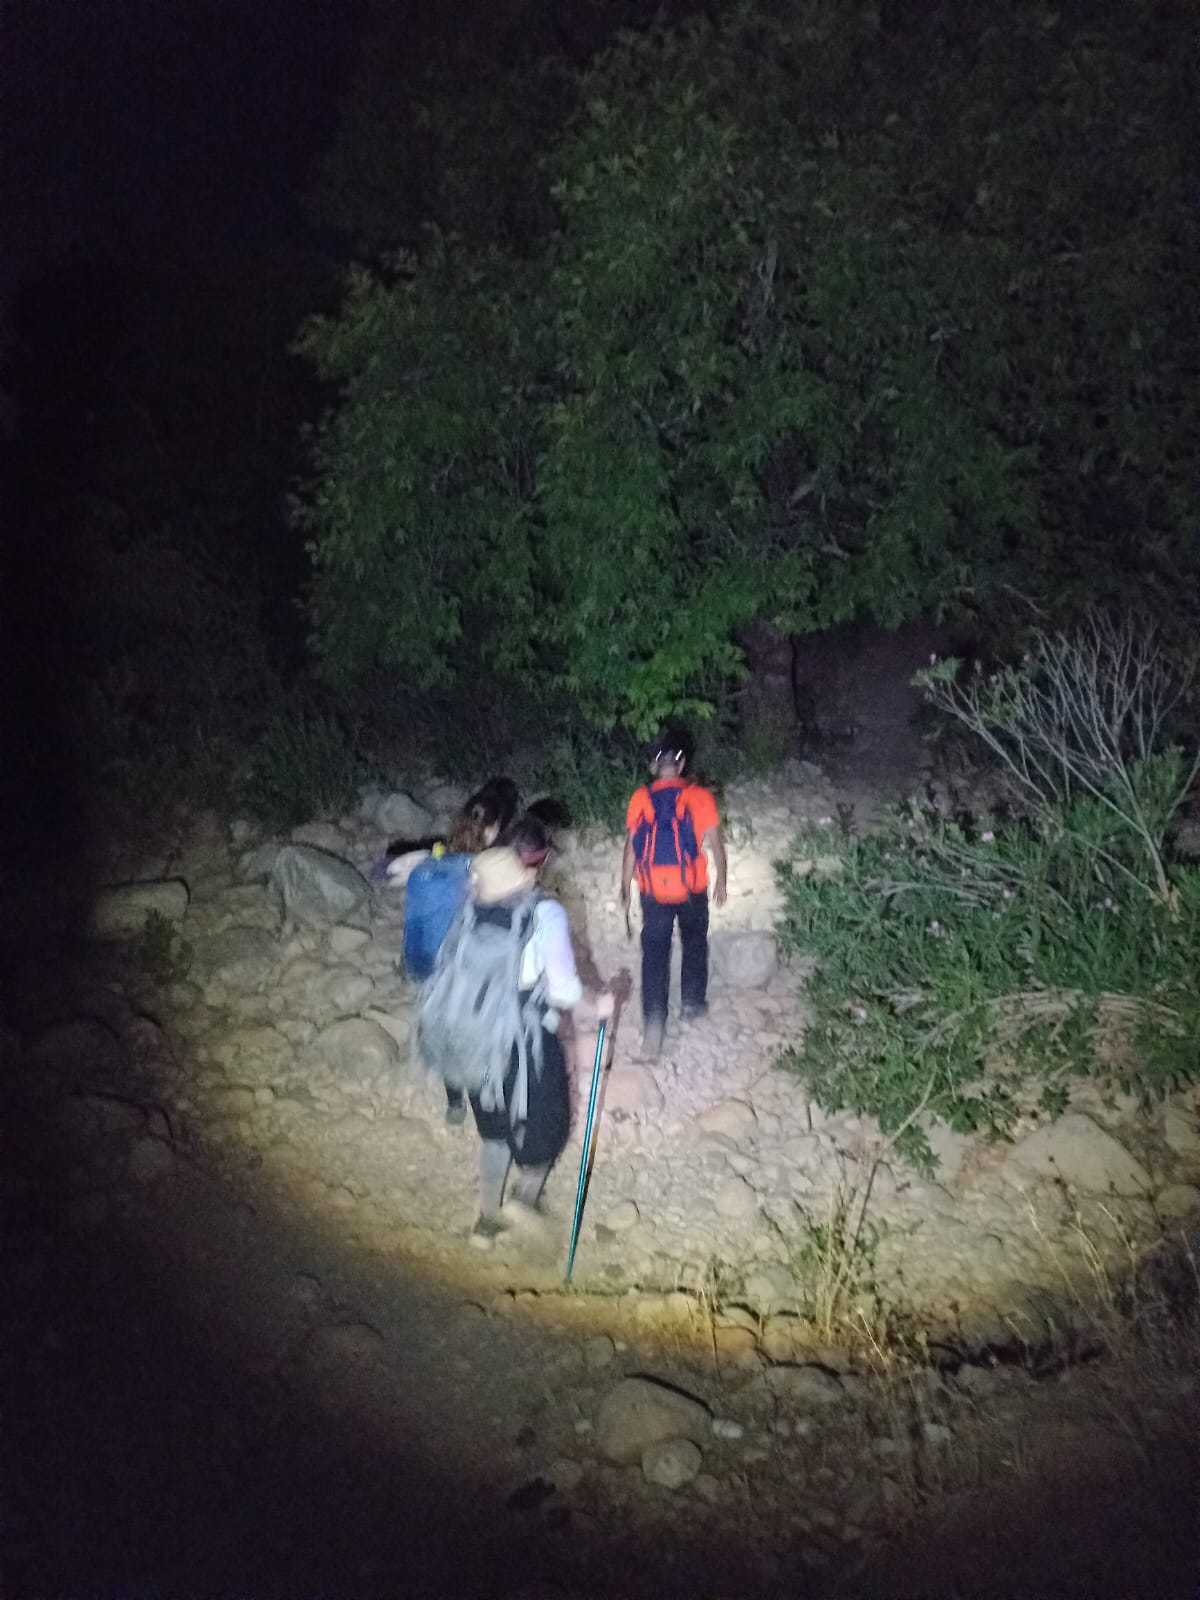 יחידת חילוץ “גליל כרמל” חילצו הלילה שלוש נשים מצפת שנקלעו לחשכה בנחל עמוד